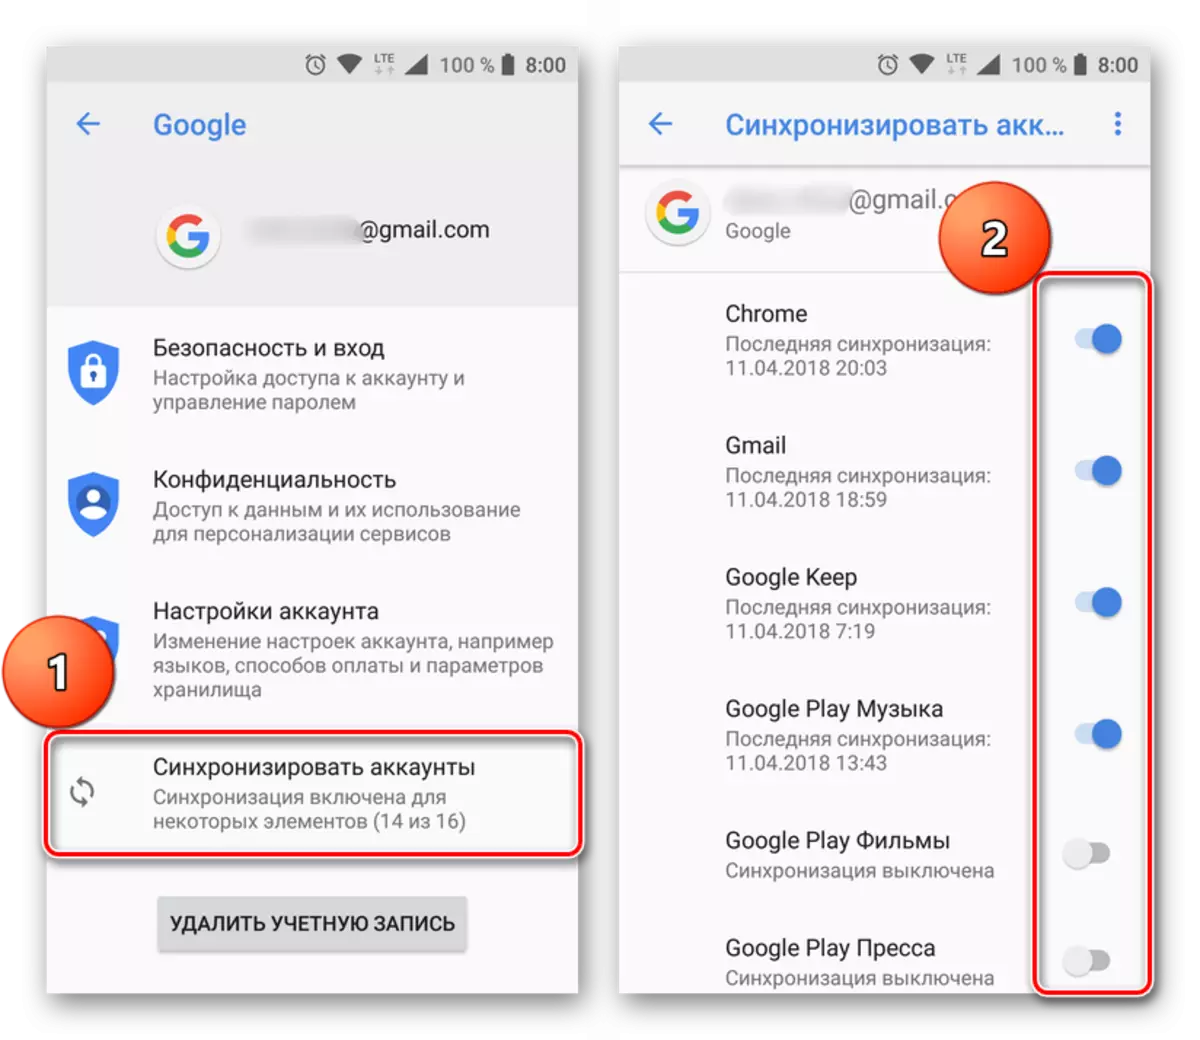 Activación de Tumblerizadores de sincronización de contas de Google en Android